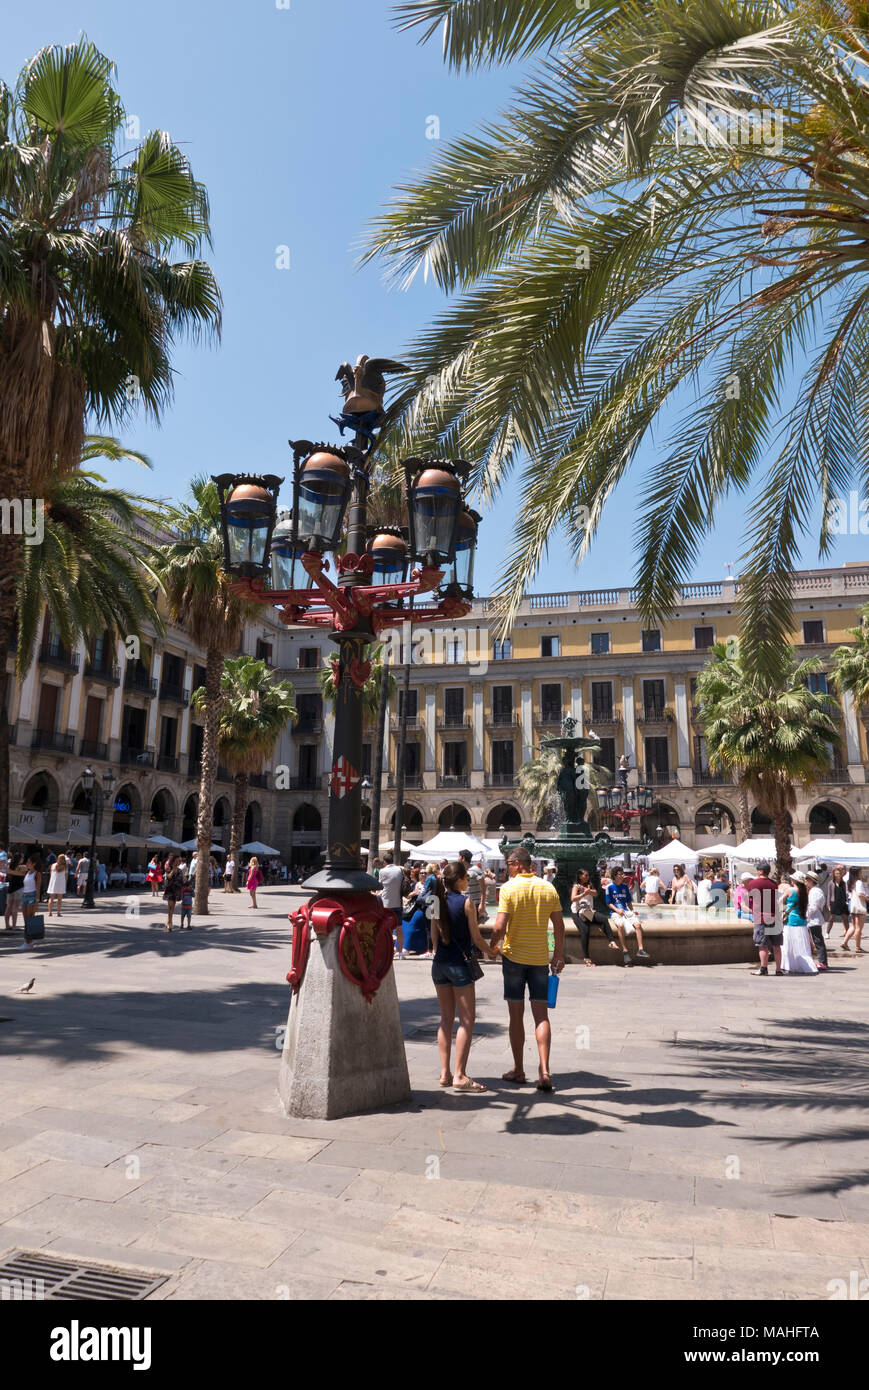 Antoni Gaudi Lamp post in Placa Reial, Barcelona, Spain Stock Photo - Alamy